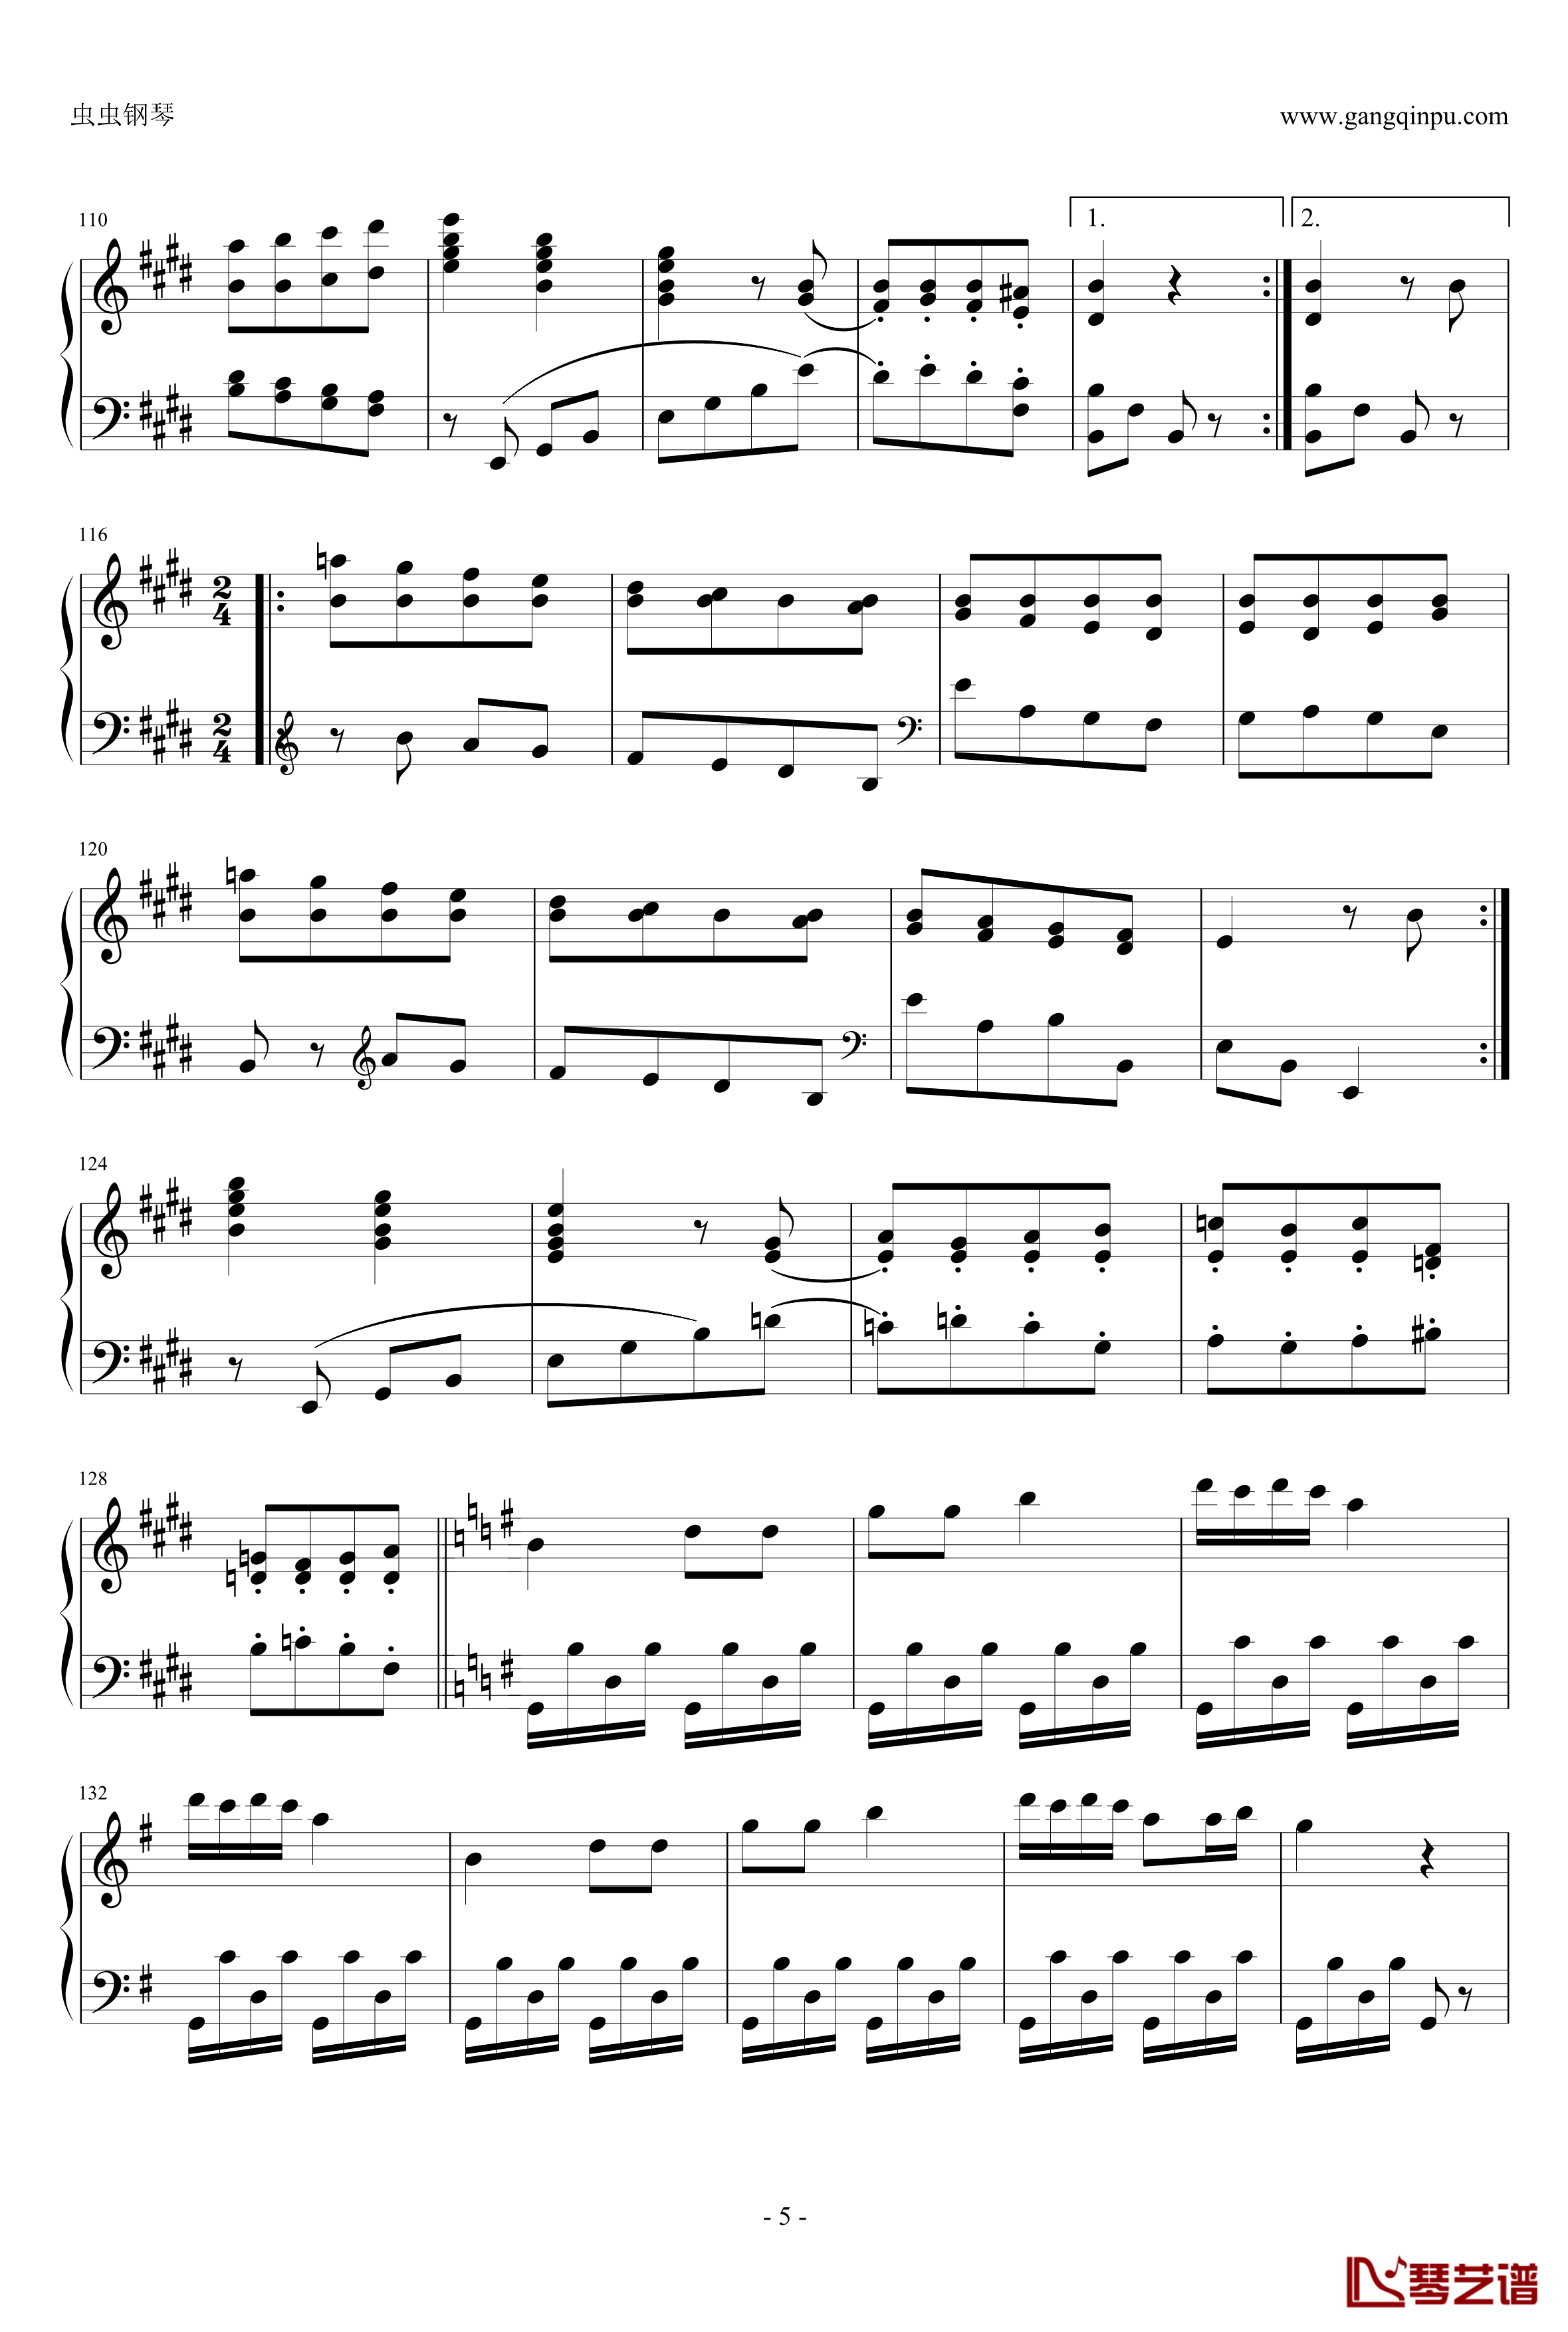 丢失一分钱的愤怒钢琴谱-贝多芬-beethoven5